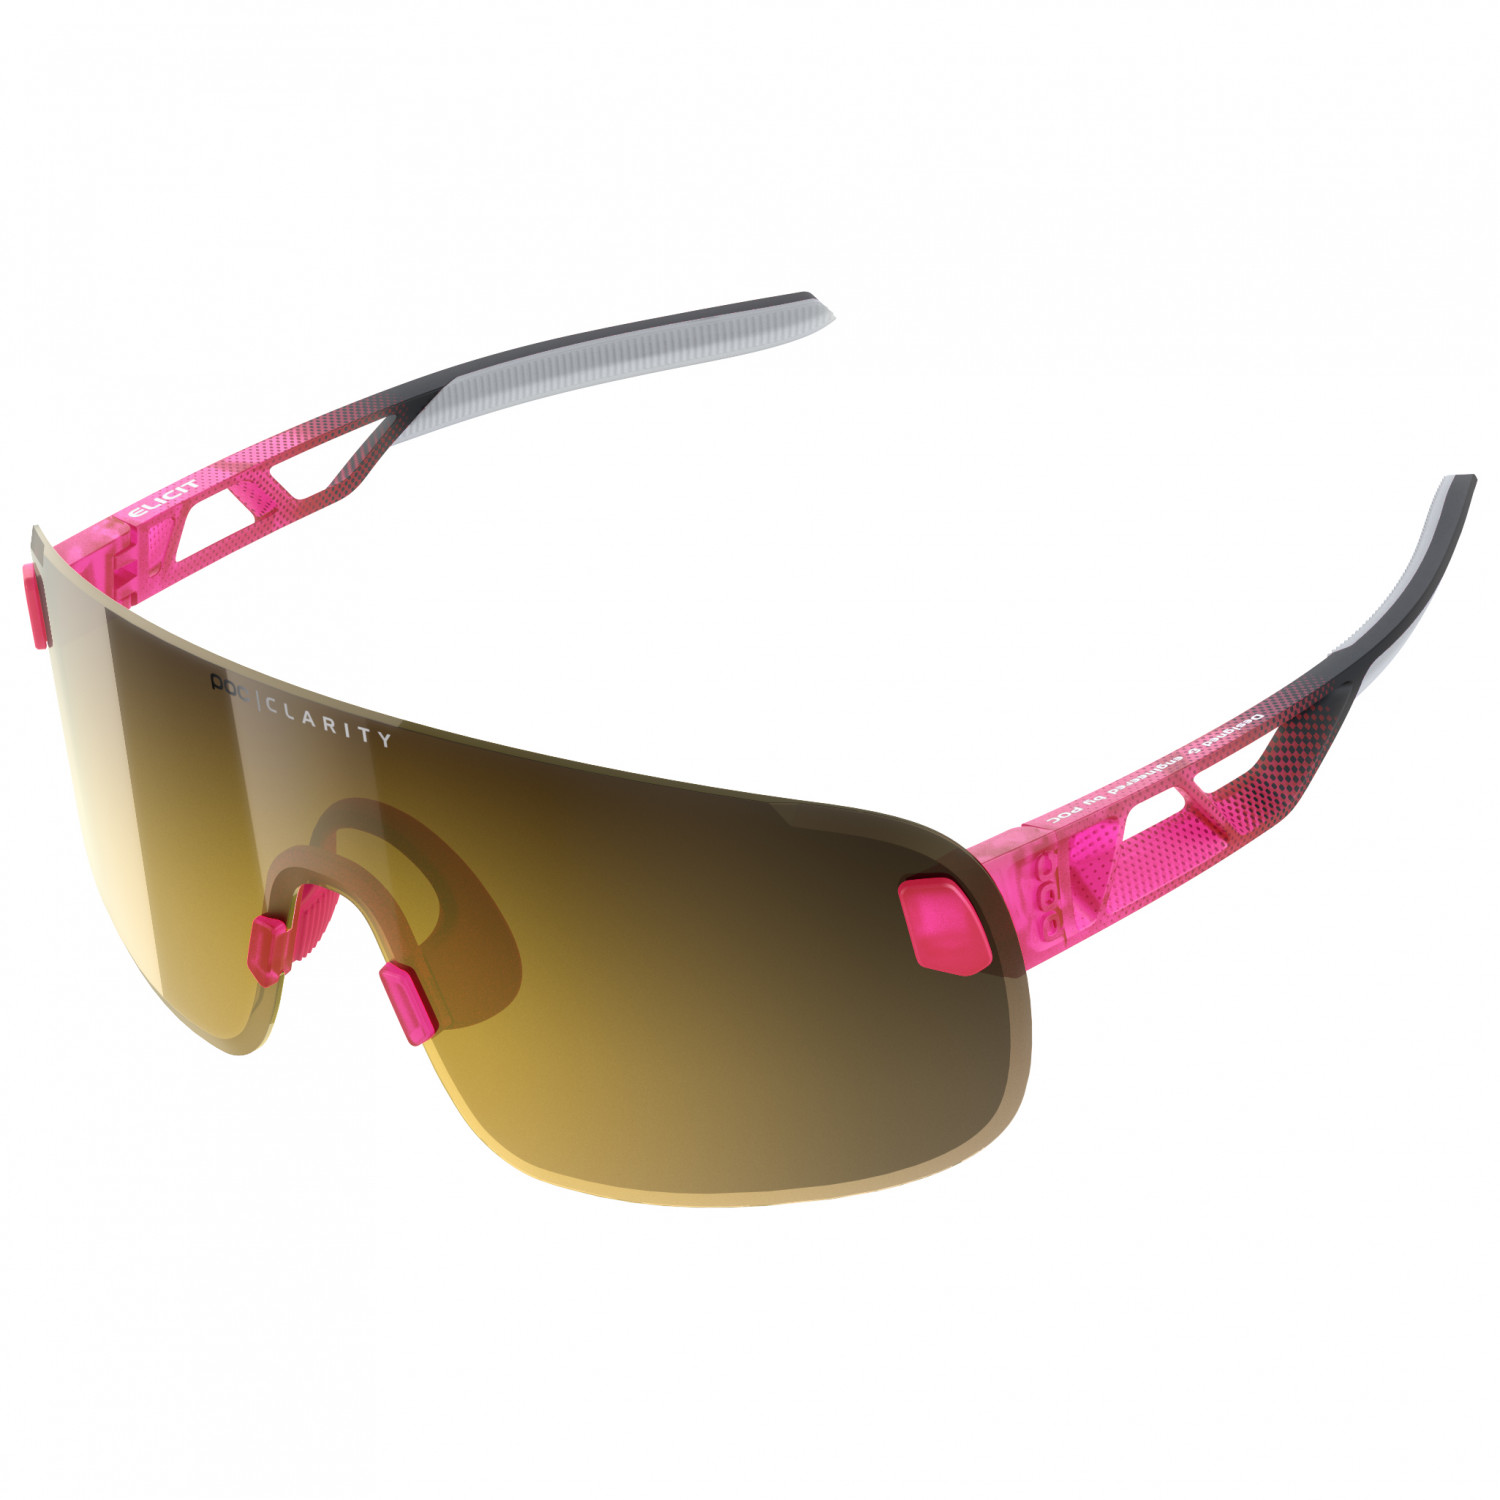 Велосипедные очки Poc Elicit S2 (VLT 16%), цвет Fluorescent Pink/Uranium Black Translucent стереоусилитель rega elicit mk5 black